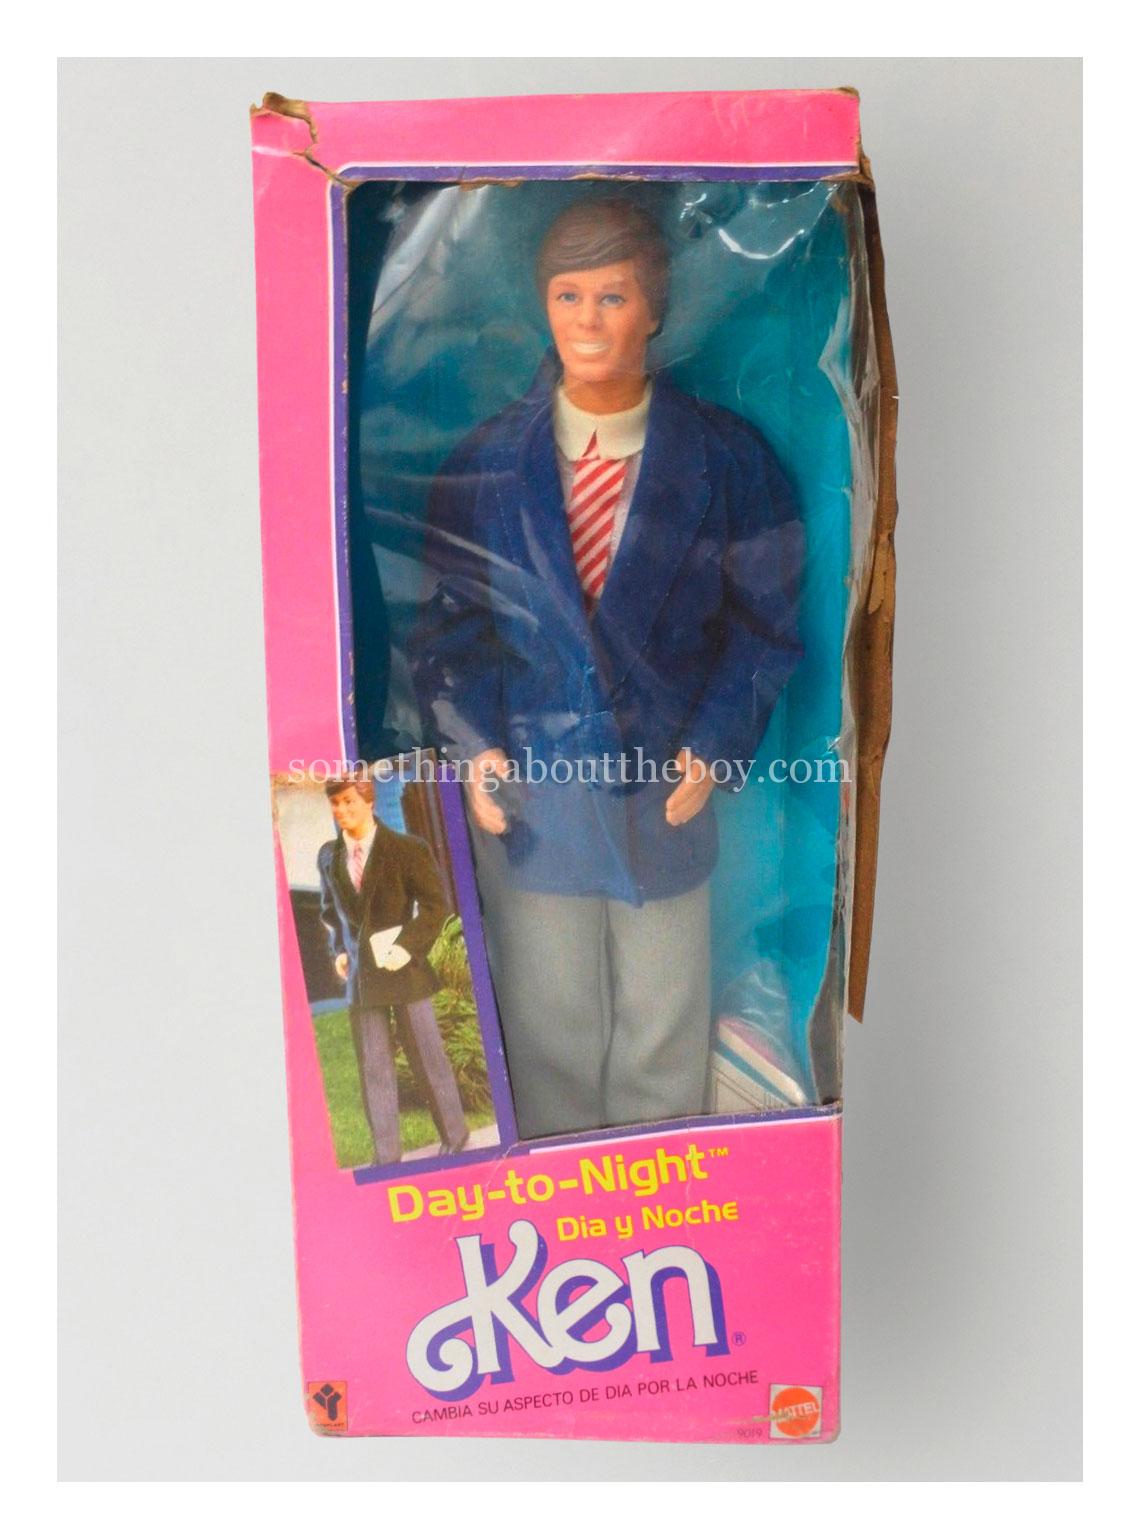 1985 51-9019 Day-to-Night Ken (Venezuelan version) in original packaging